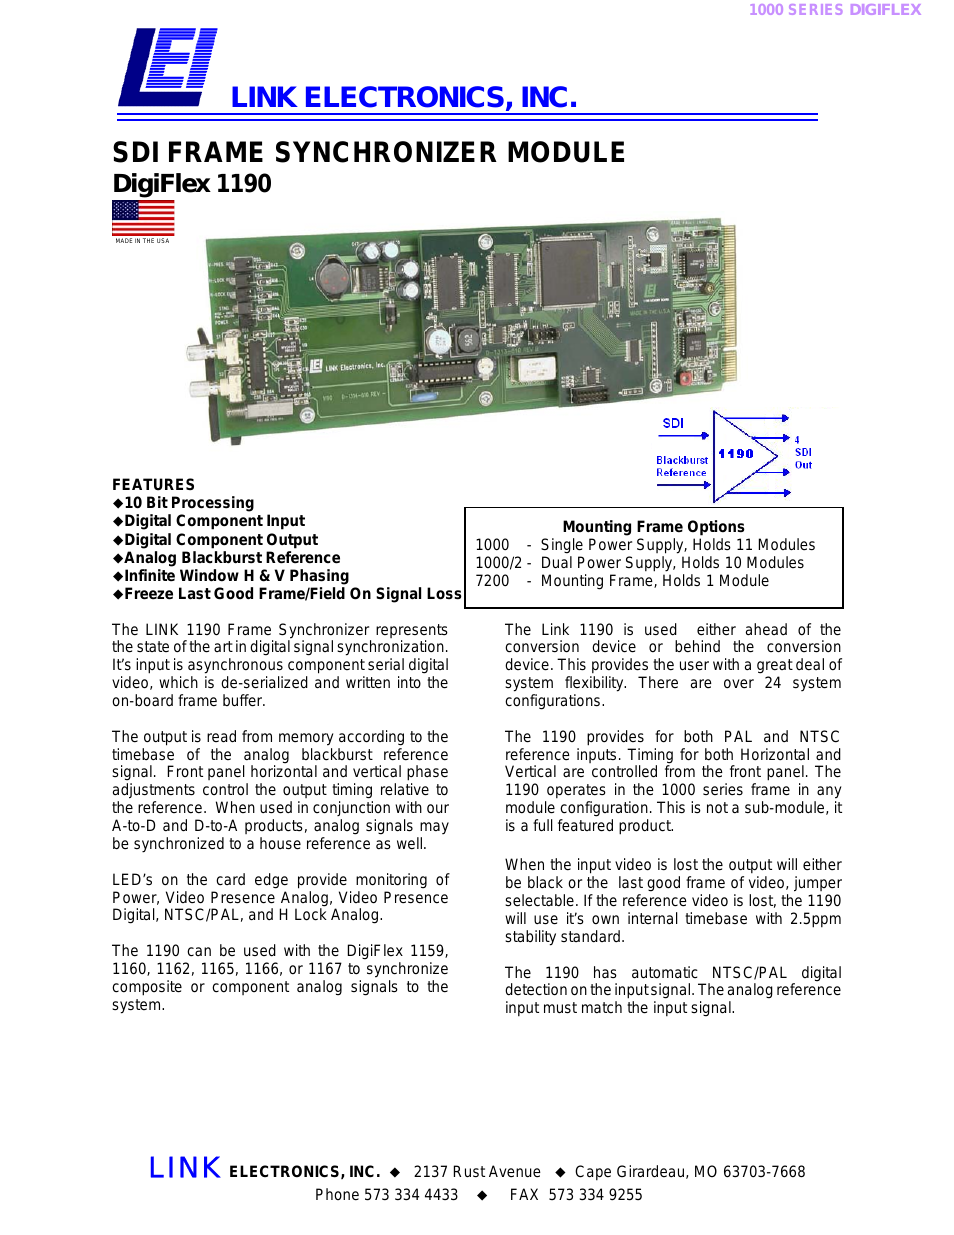 SDI Frame Synchronizer Module DigiFlex 1190